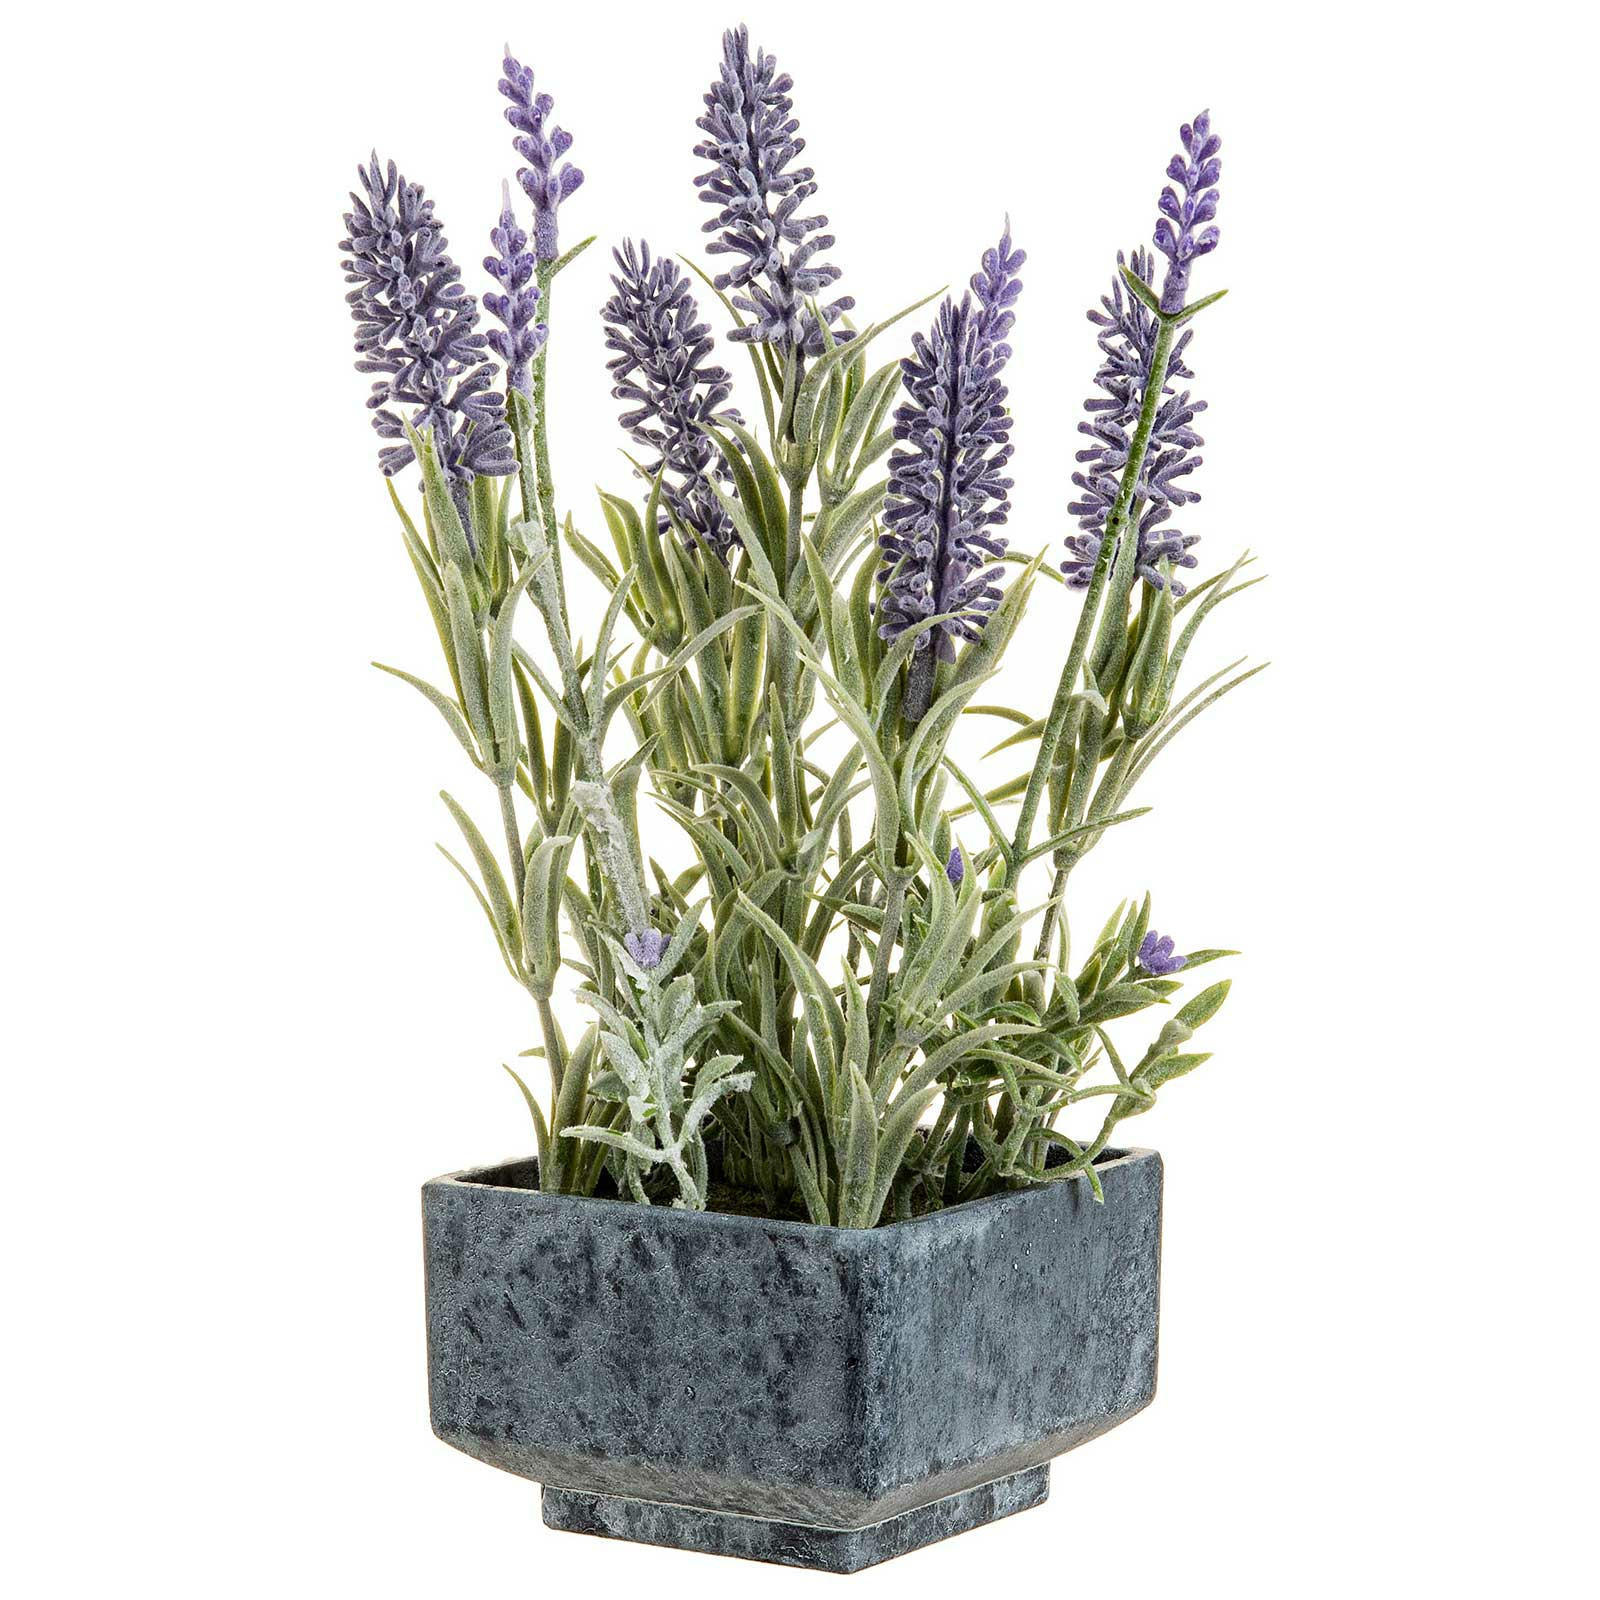 Künstliche Lavendelpflanze online kaufen SIDCO sidco.de - € bei 17,98 einfach